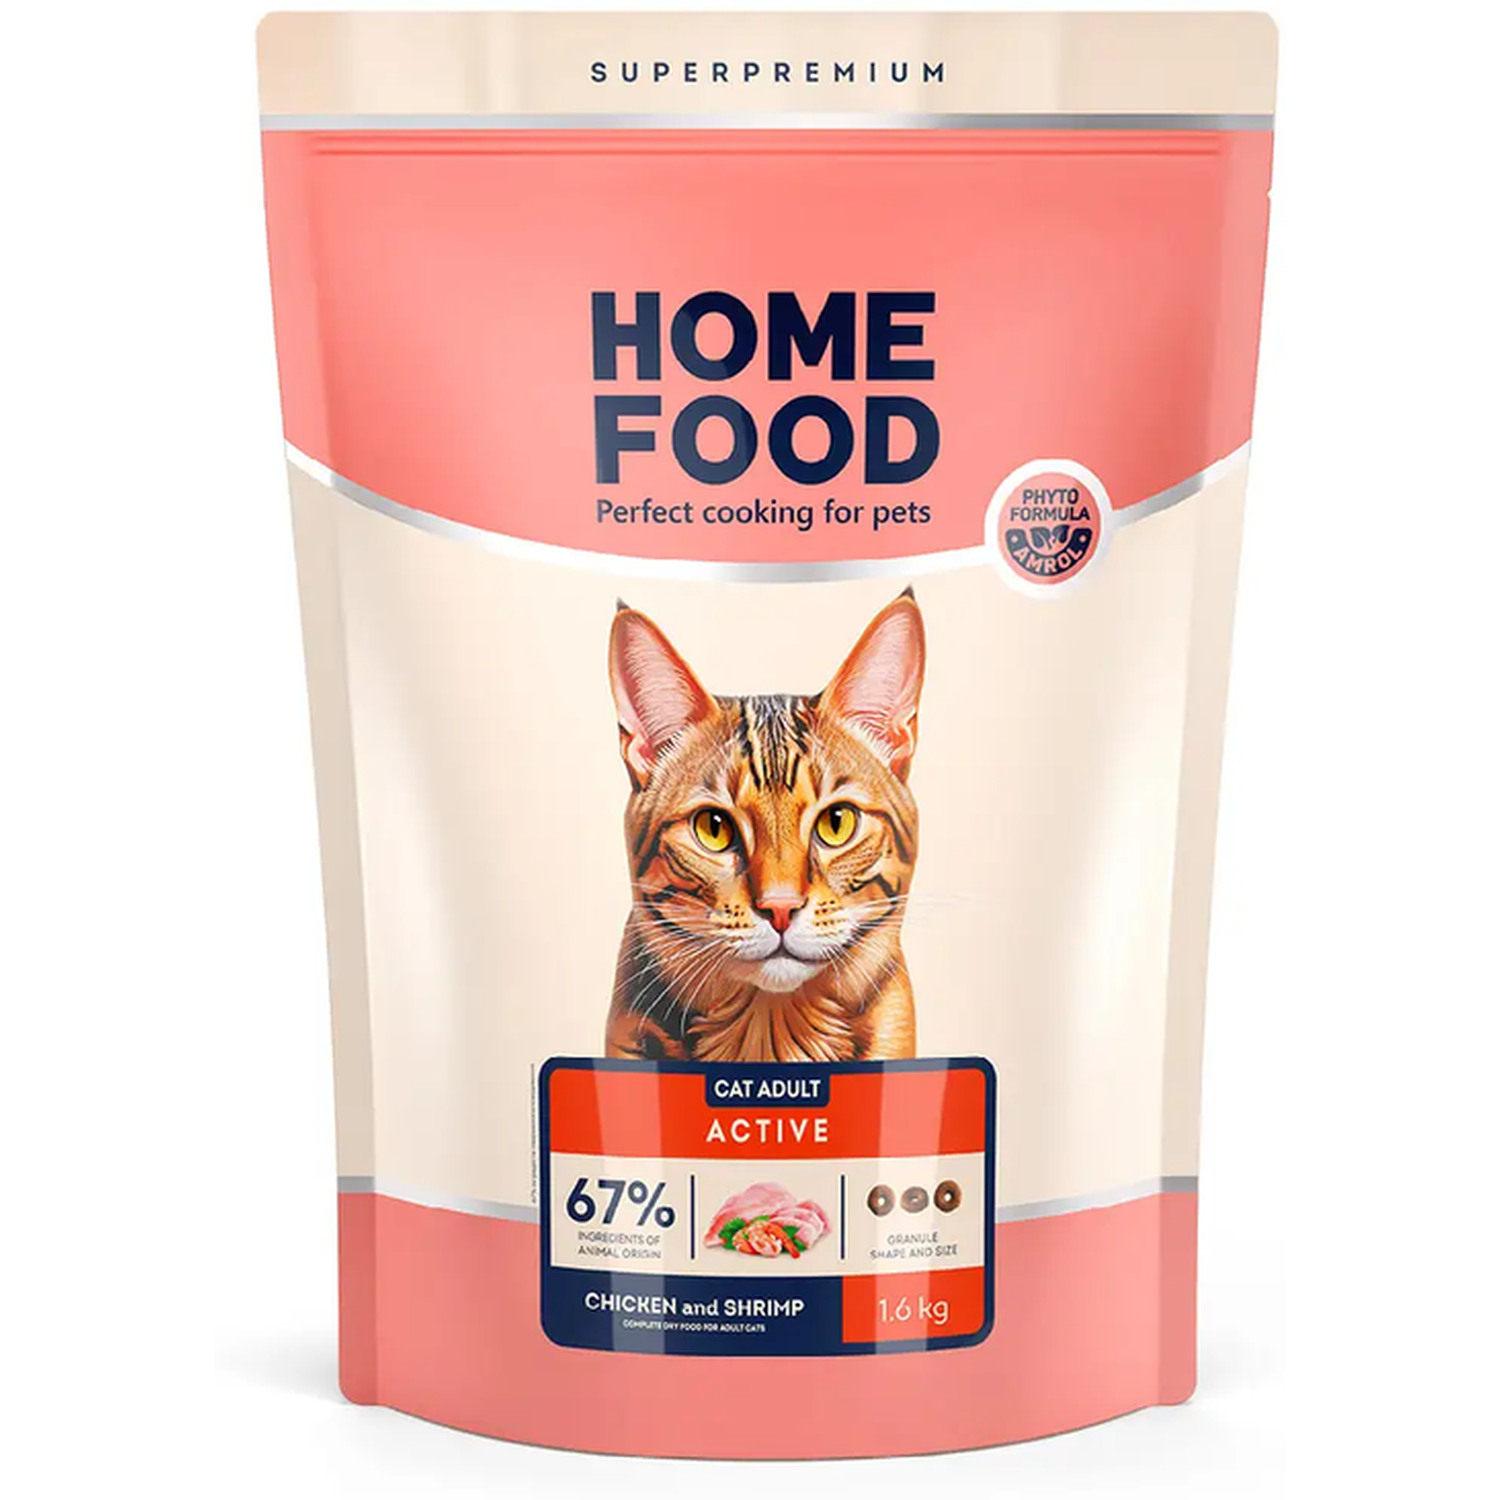 Сухой корм для активных кошек Home Food Adult, с курочкой и креветкой, 1.6 кг - фото 1